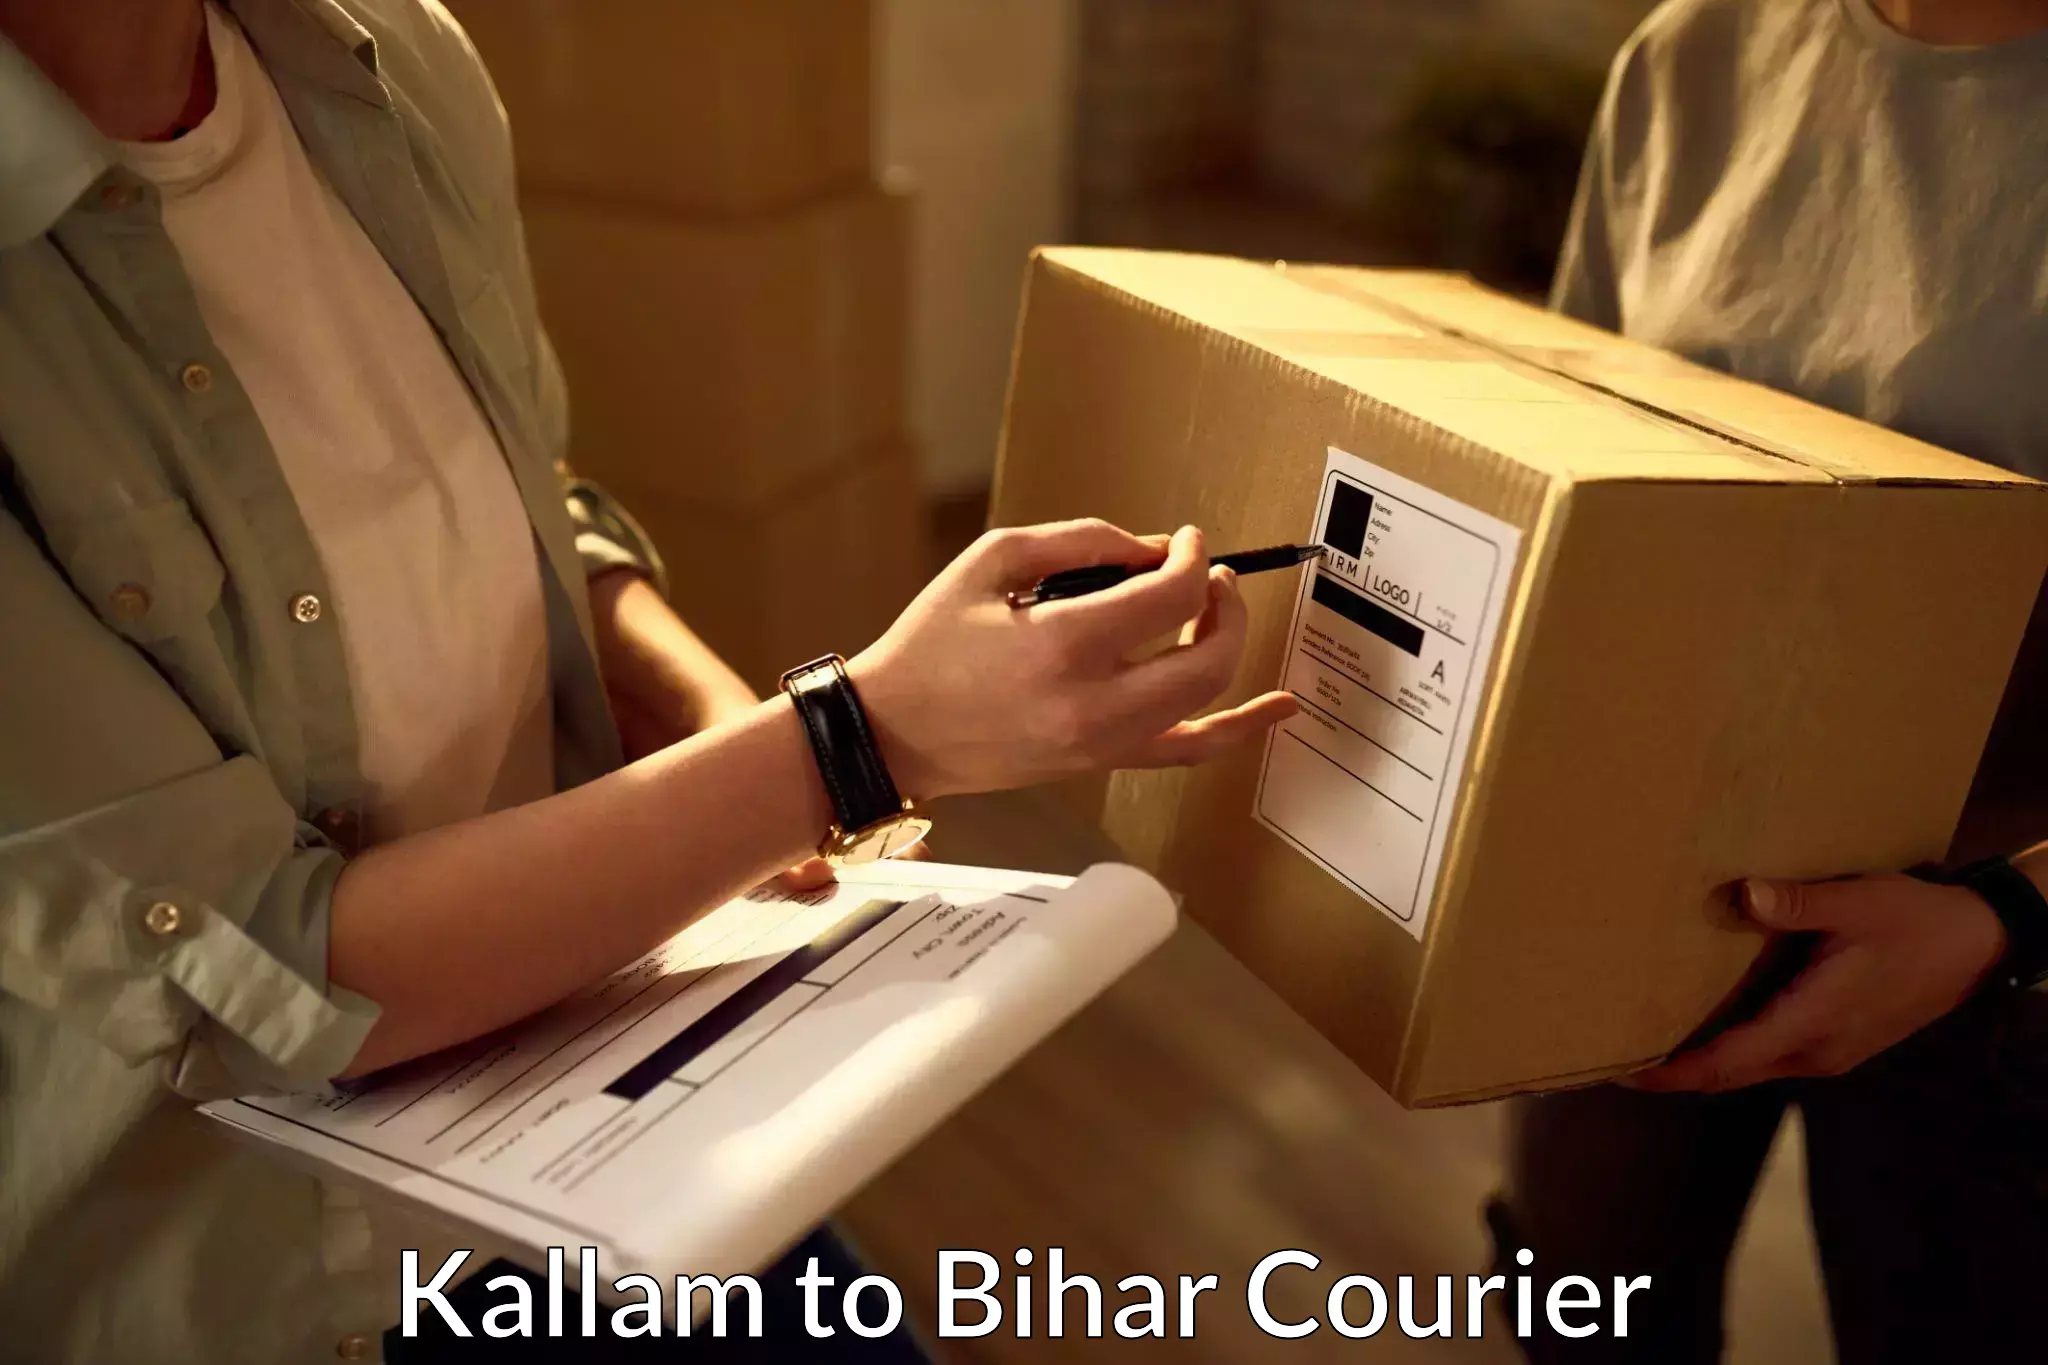 Pharmaceutical courier Kallam to Piro